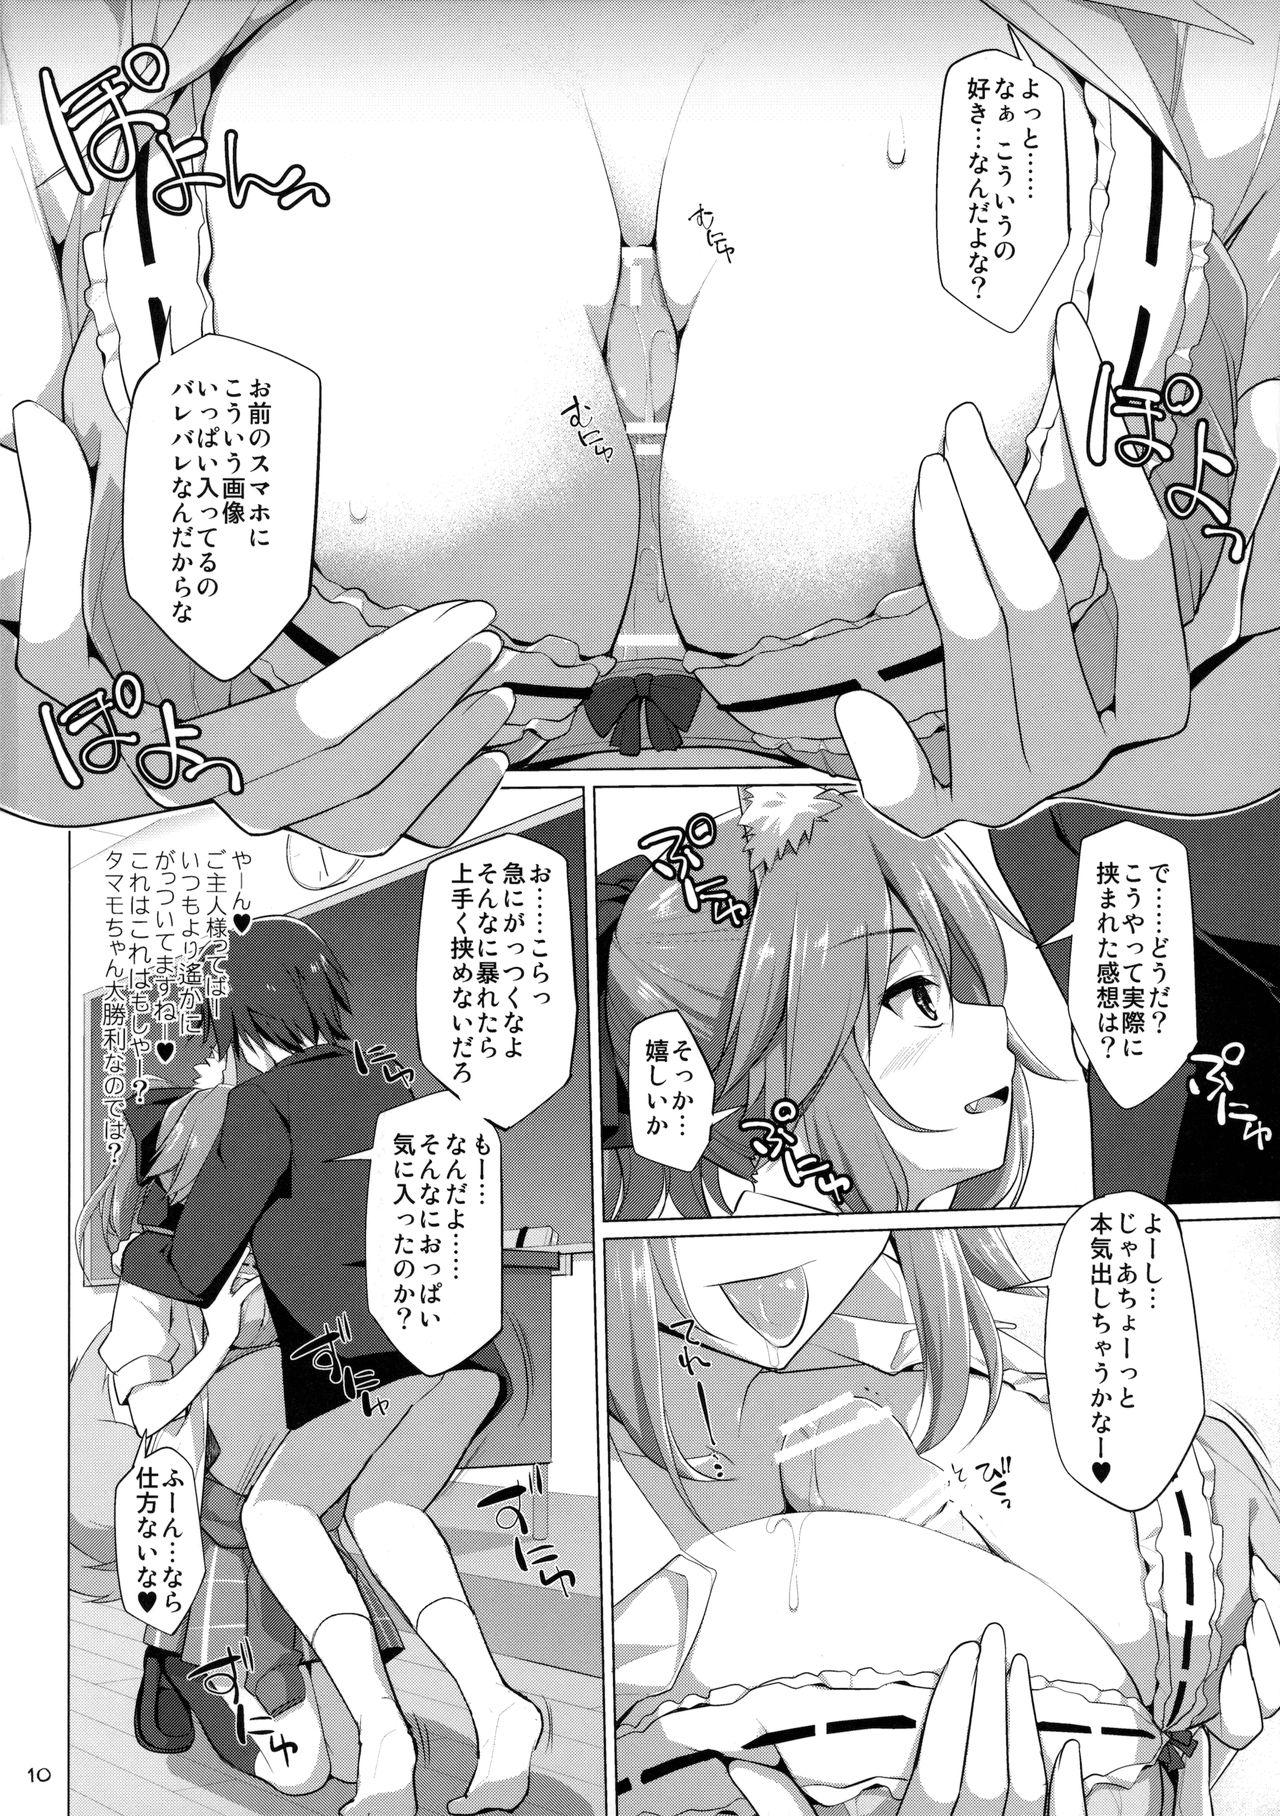 Class Goshujin-sama Oppai desu yo!! 5 - Fate extra Tease - Page 9